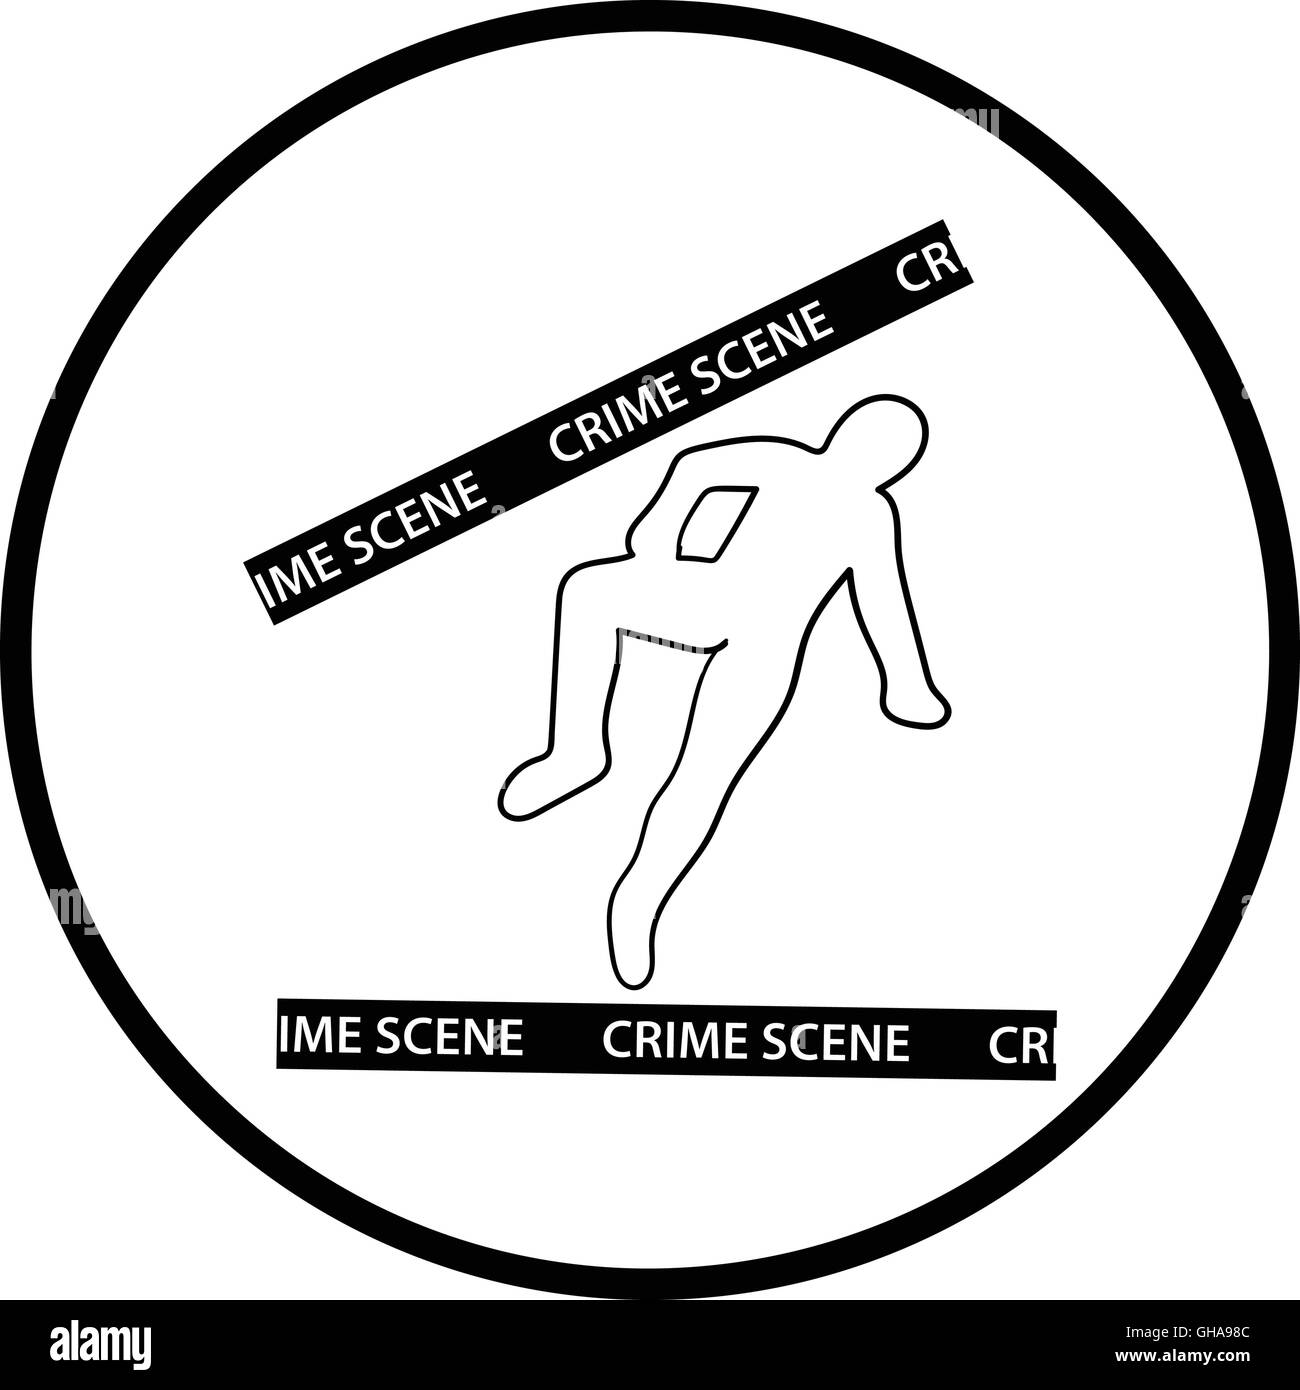 Crime scene icon. Thin circle design. Vector illustration. Stock Vector